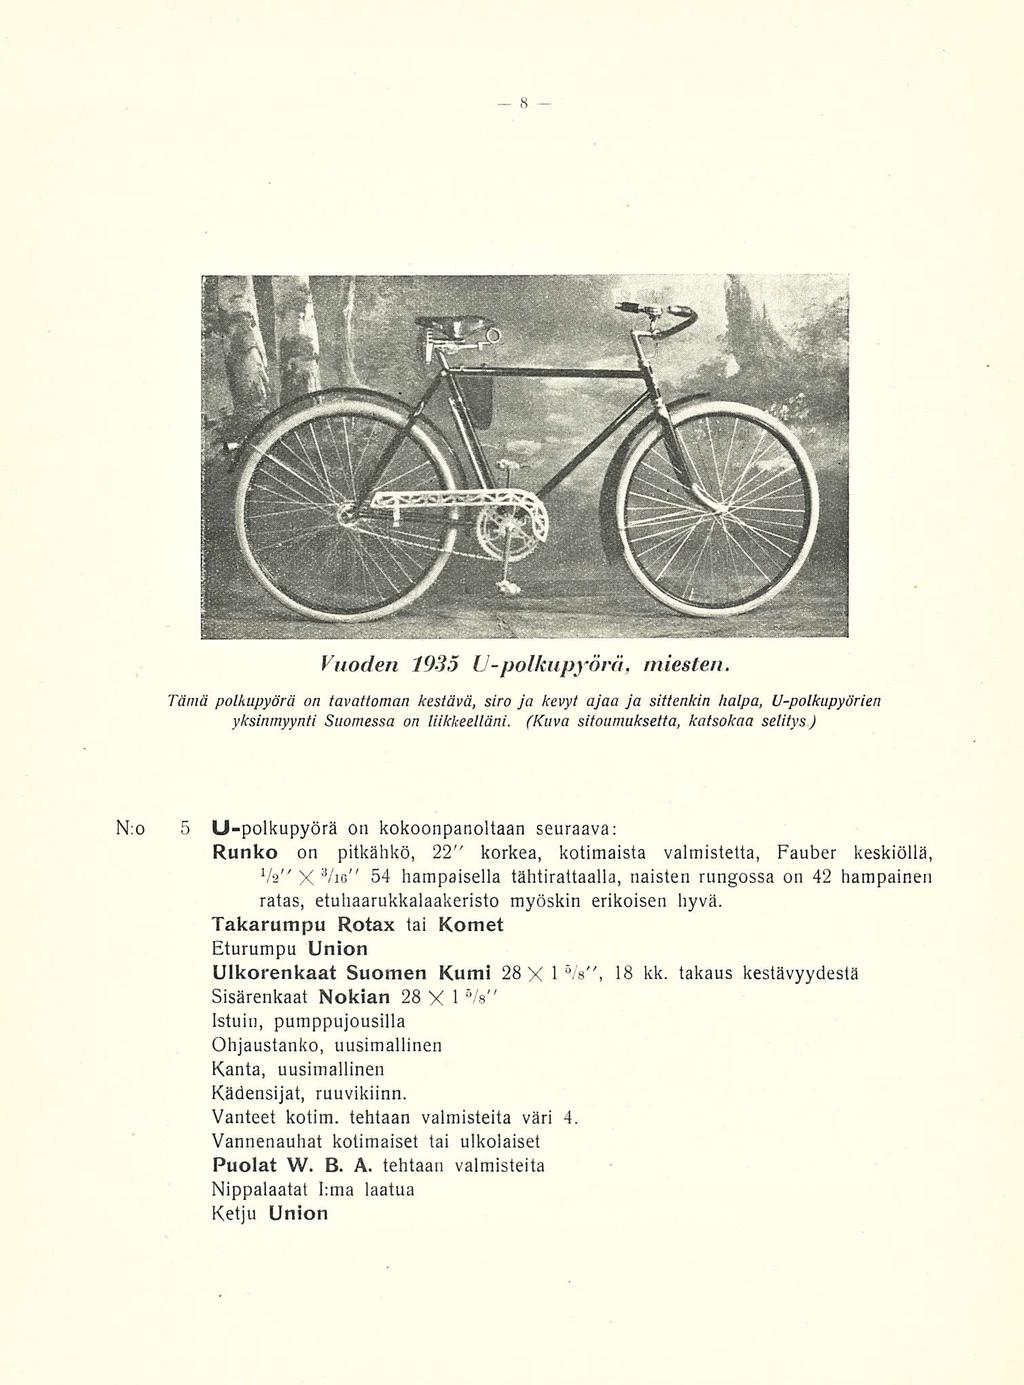 Vuoden 1935 U-polkupyörä, miesten. Tämä polkupyörä on tavattoman kestävä, siro ja kevyt ajaa ja sittenkin halpa, U-polkupyörien yksinmyynti Suomessa on liikkeelläni.